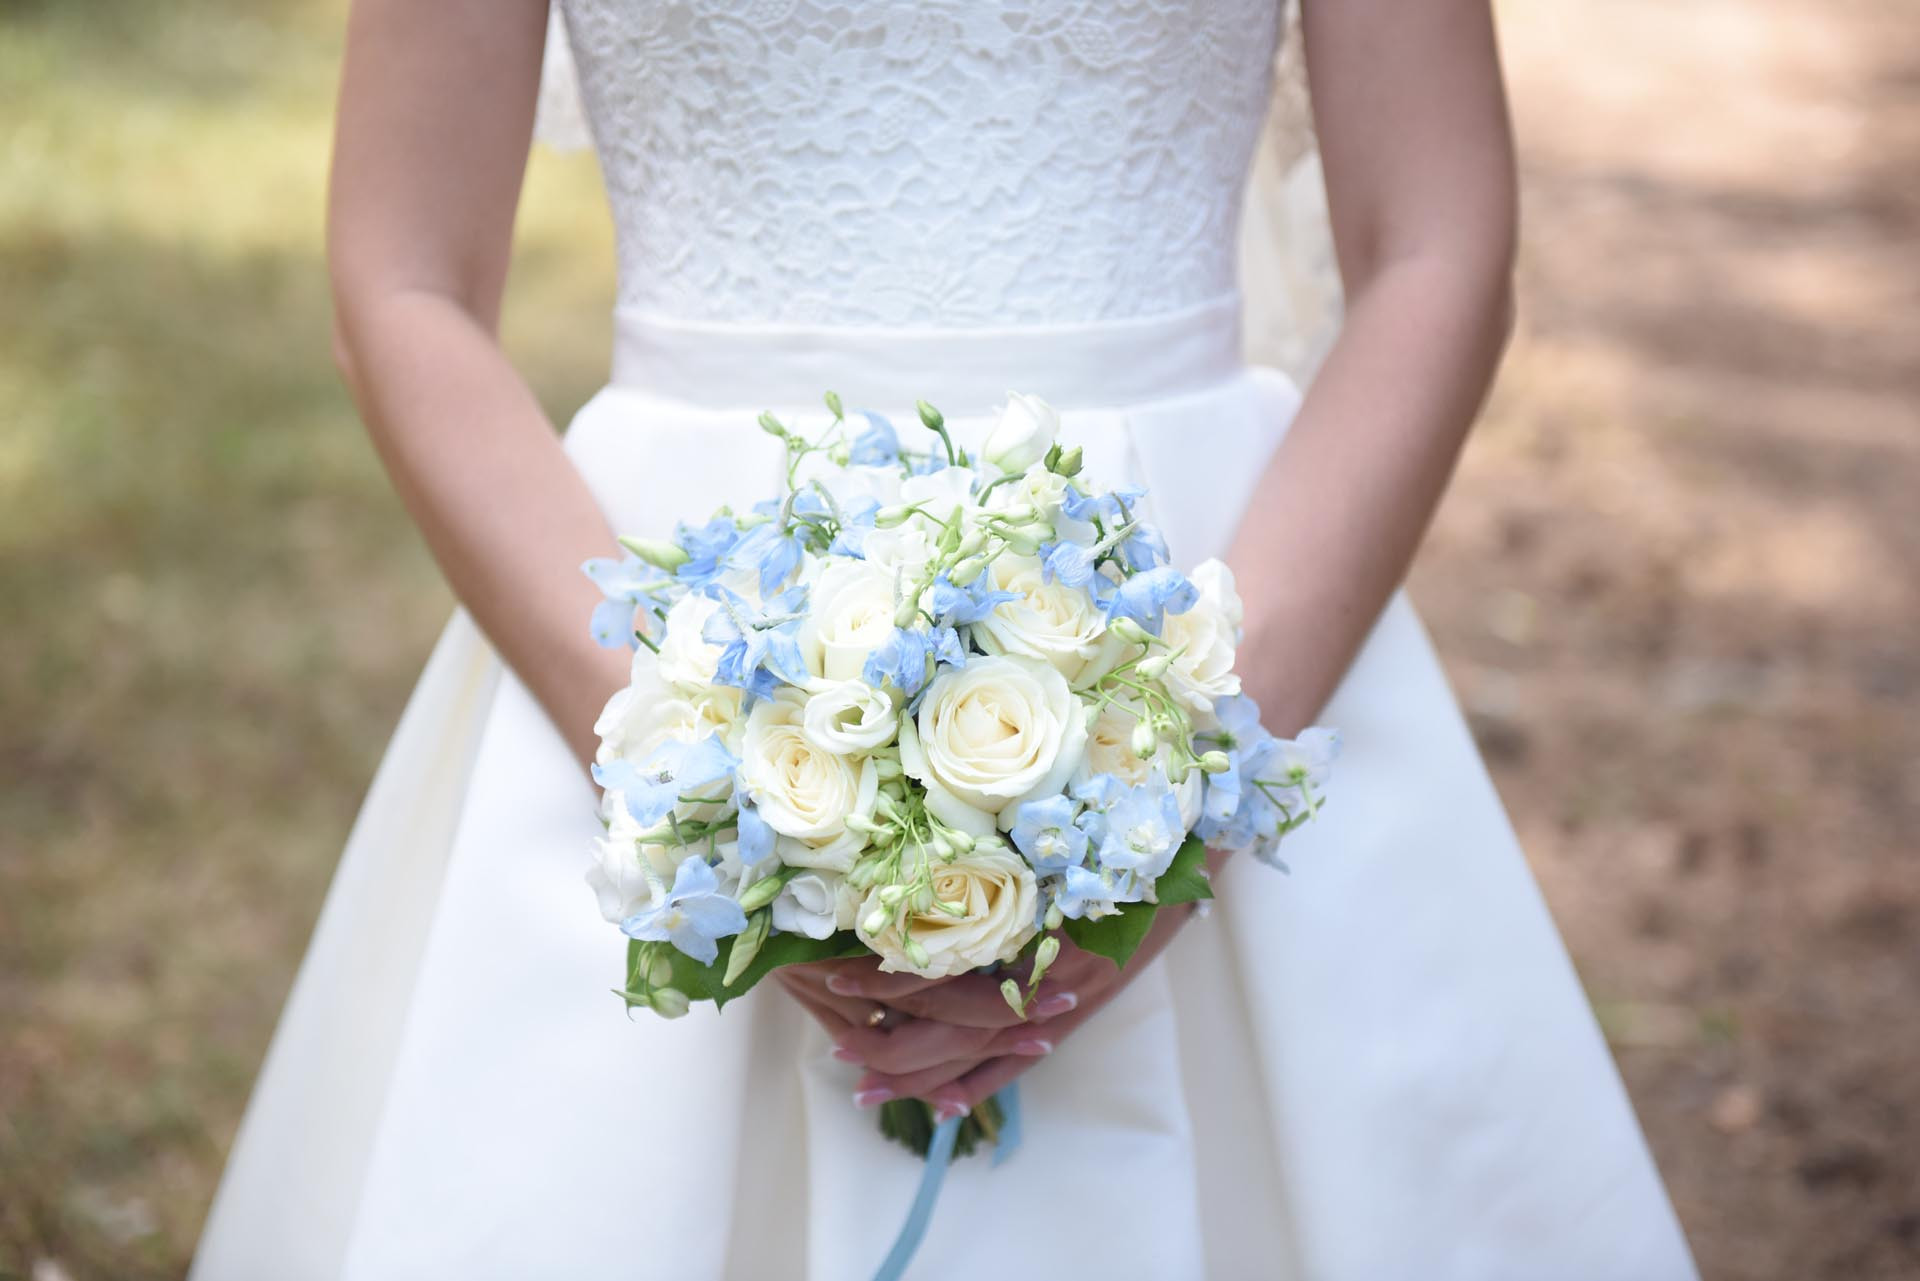 Brautstrauß Blau Weiß
 Brautstrauß in Blau und Weiß Heiraten mit braut